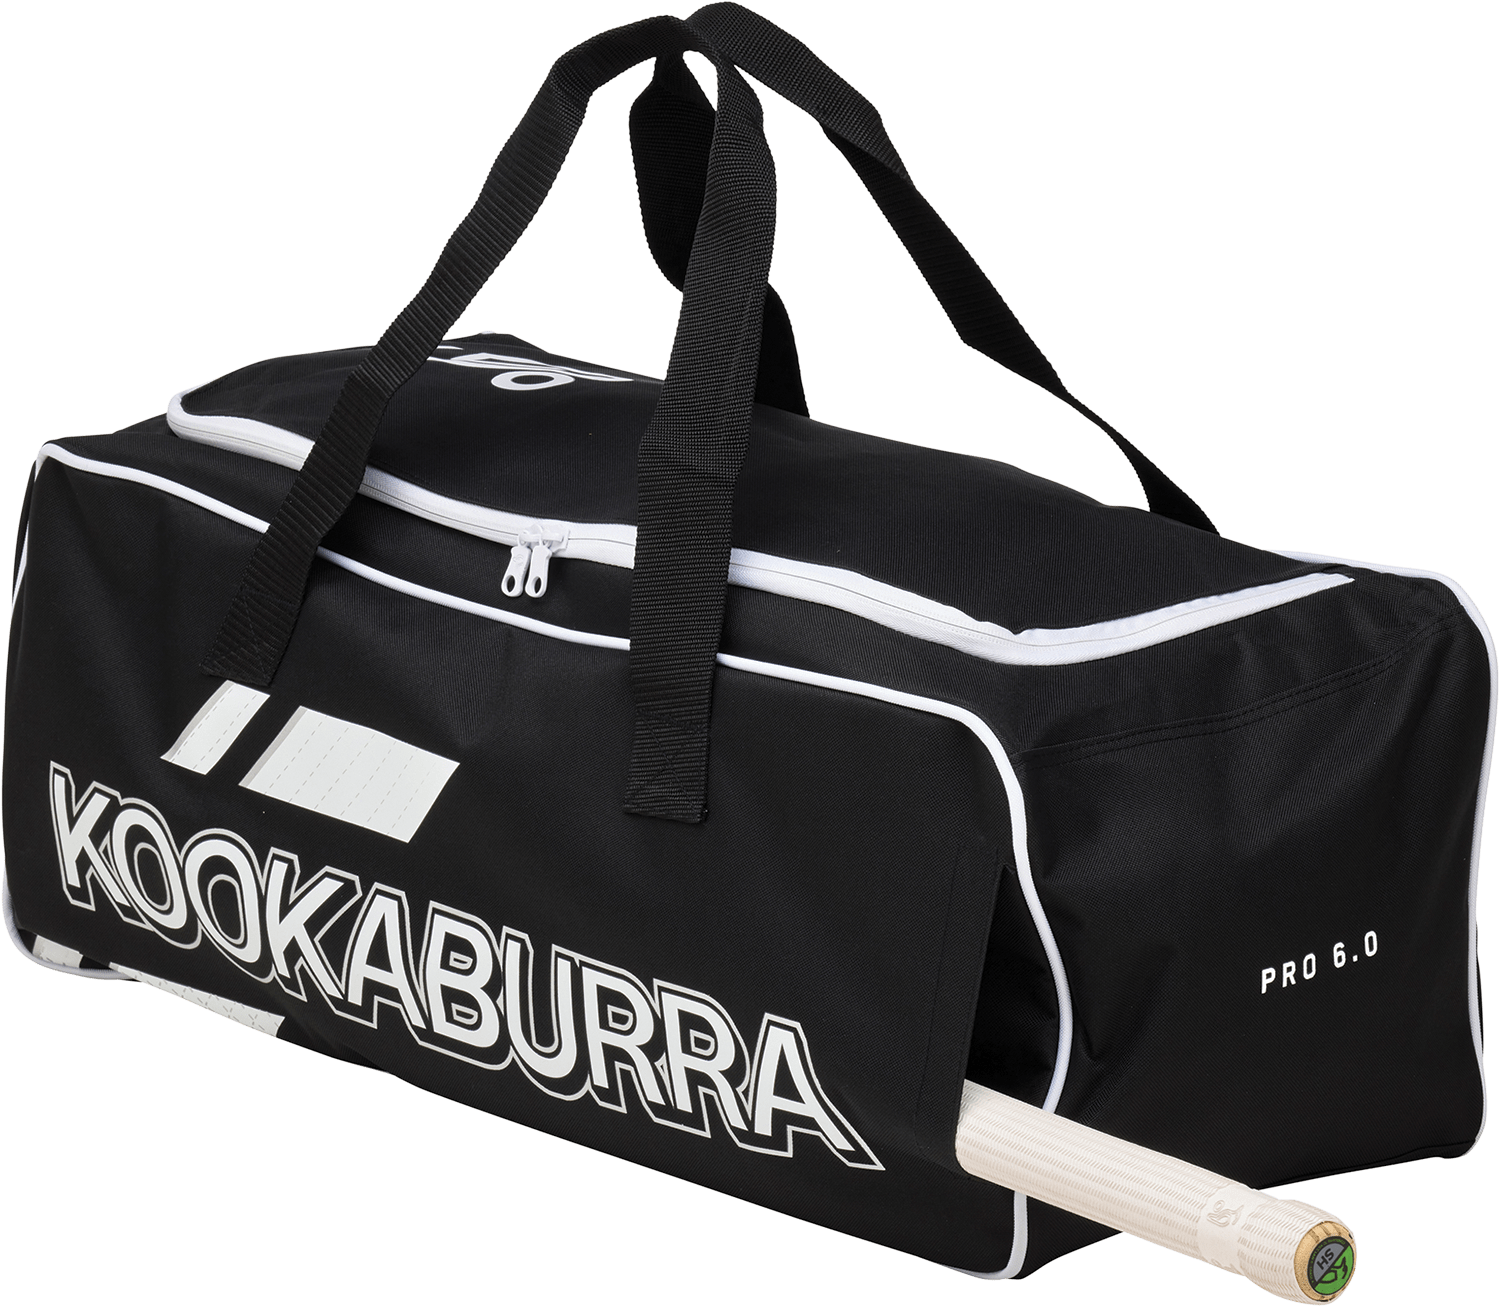 Kookaburra Cricket Bags Kookaburra 6.0 Hold All Cricket Bag